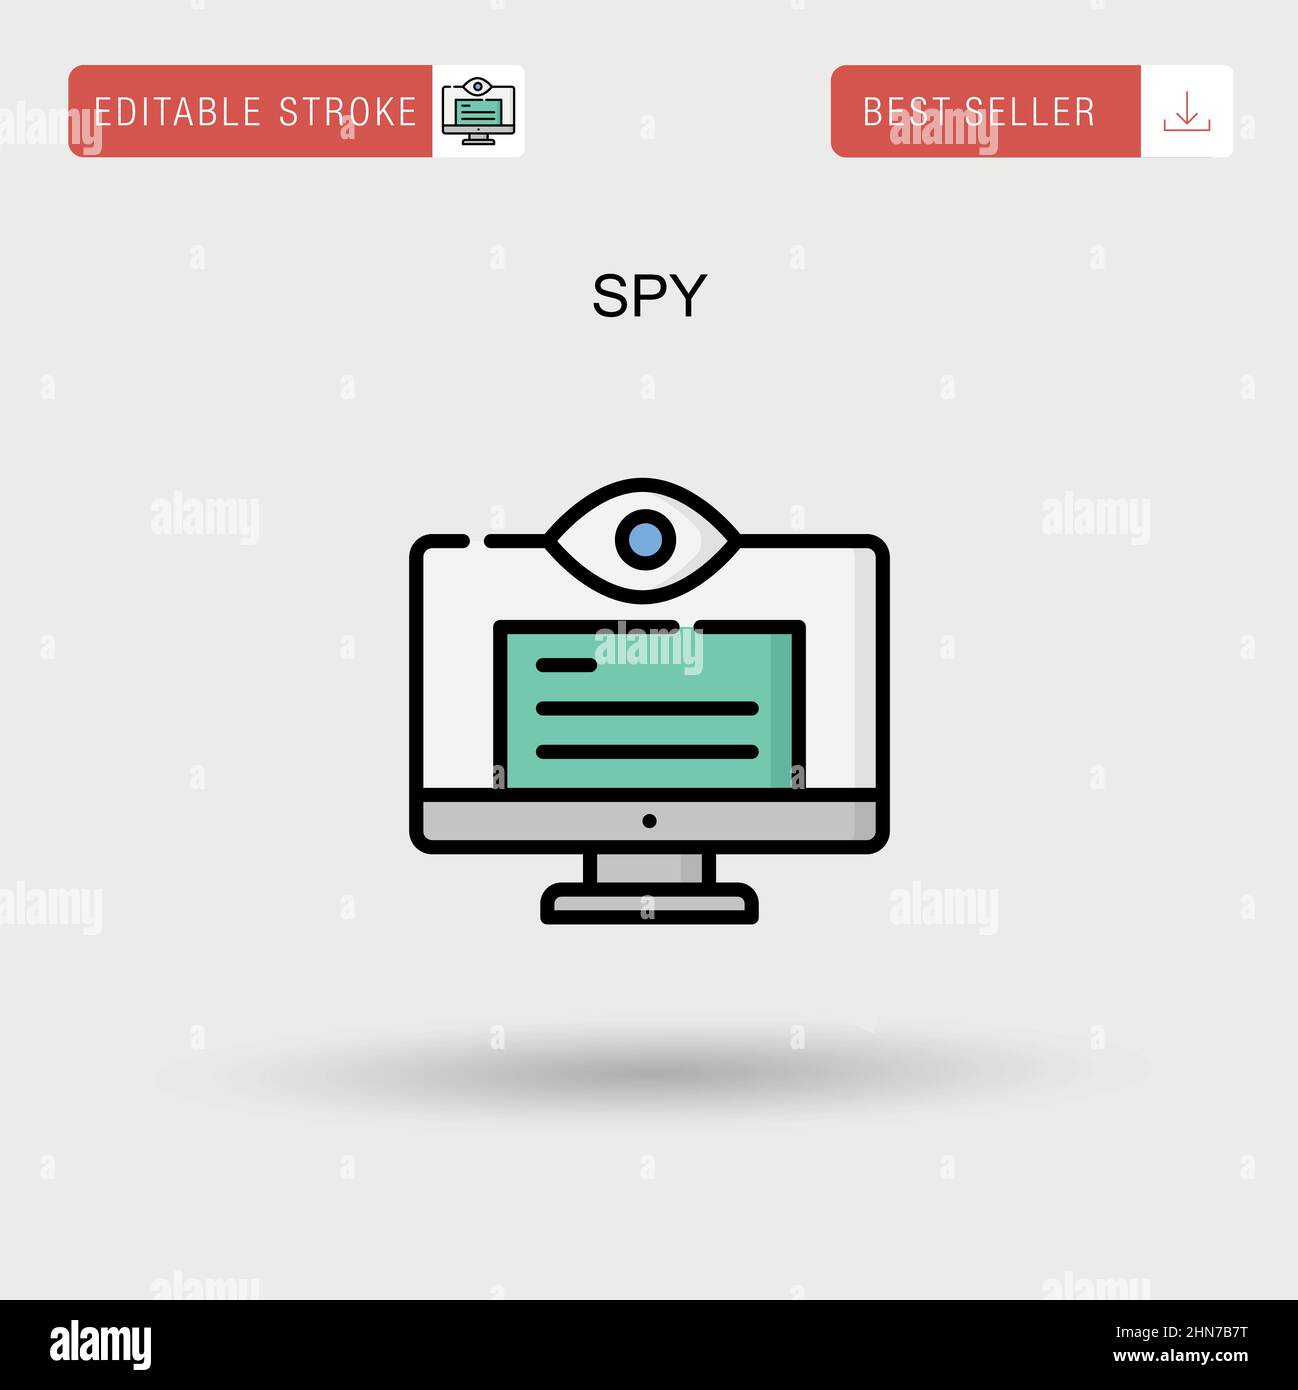 Spy Simple vector icon. Stock Vector